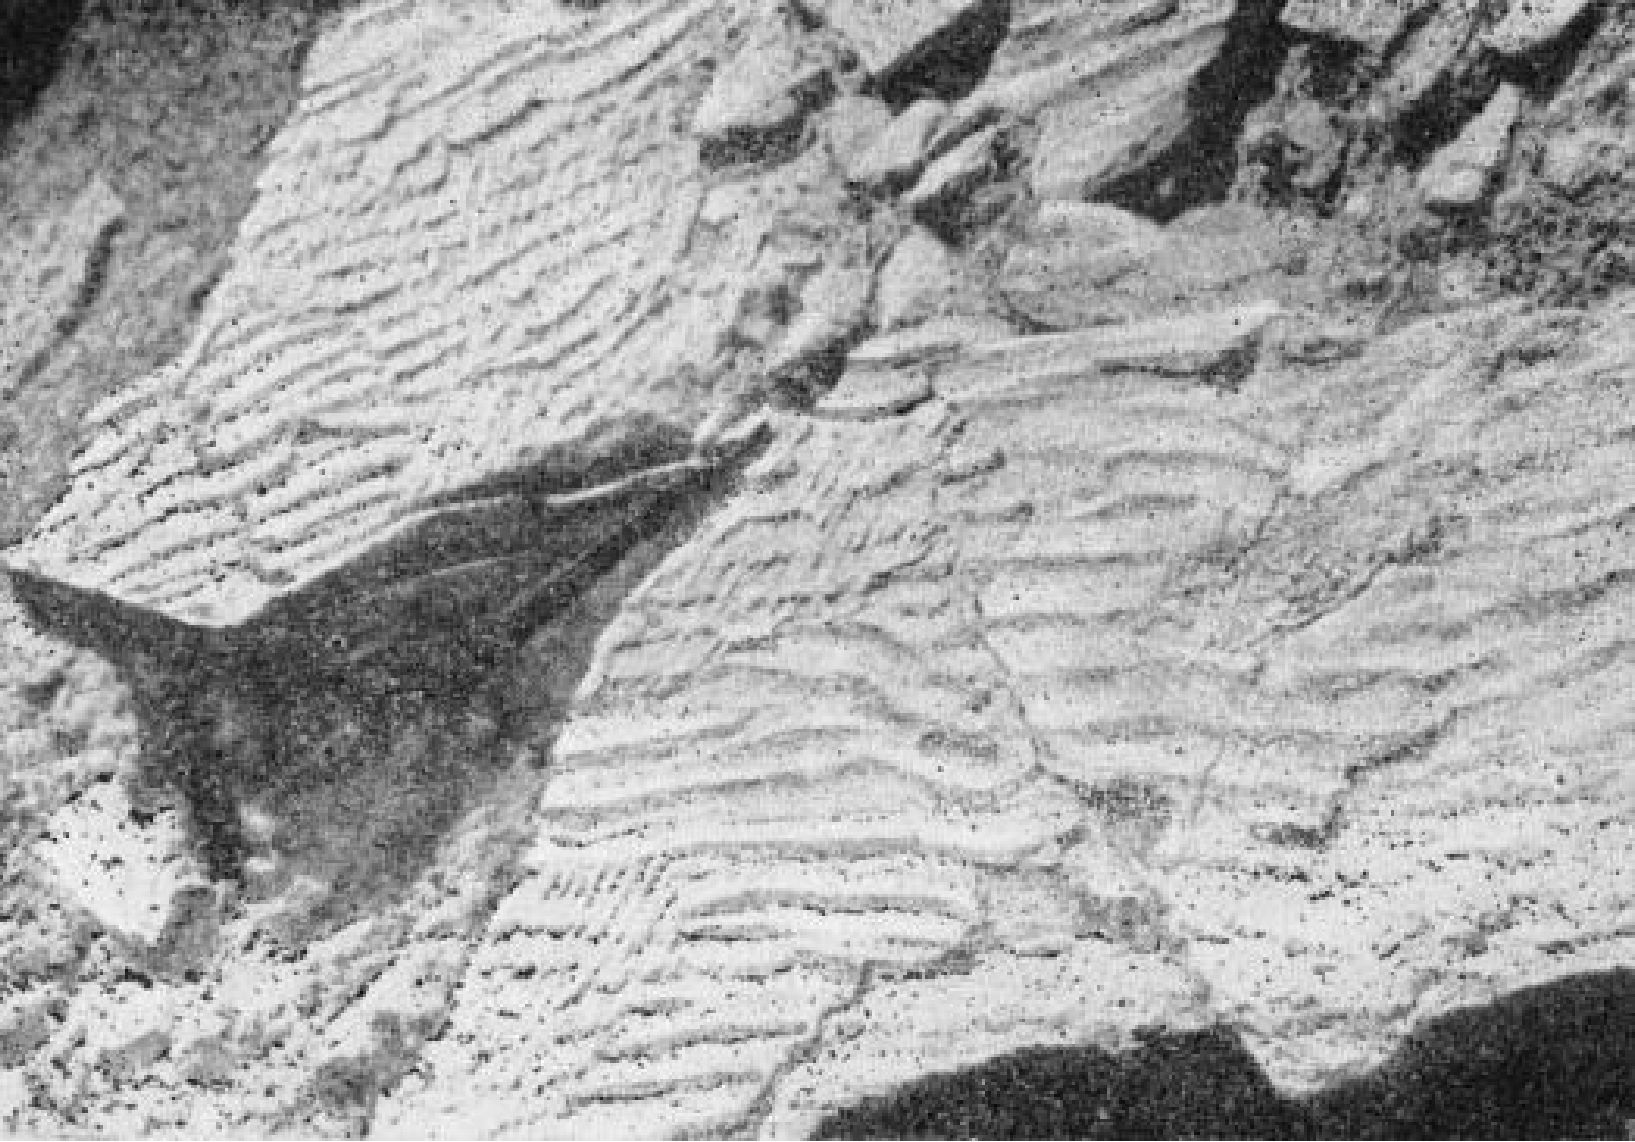 Знаки ряби на песчанике позднемелового времени в Заалтайской Гоби. Фото В.Ф. Шувалова